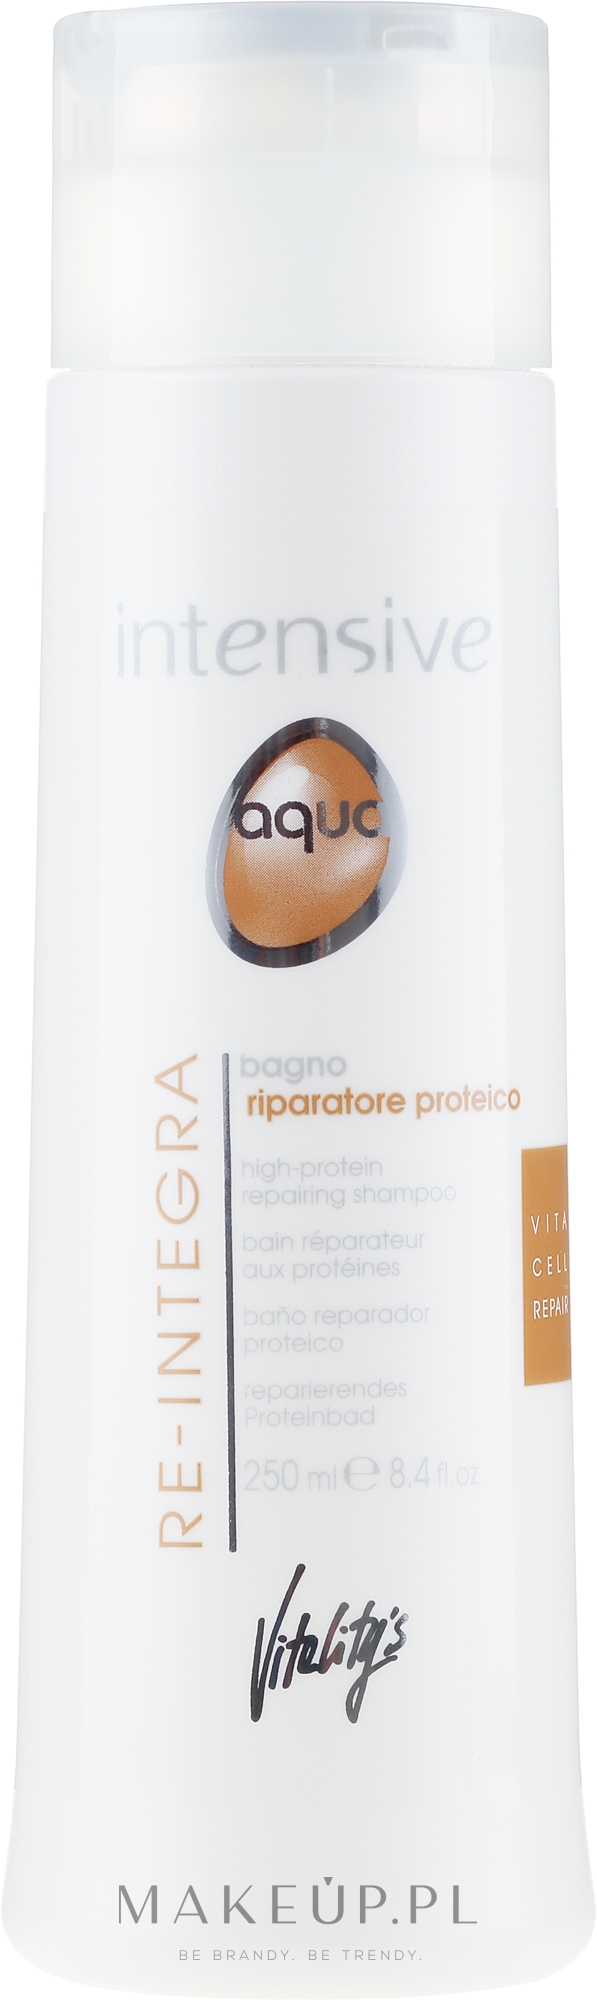 Regenerujący szampon proteinowy - Vitality’s Intensive Aqua Re-Integra High-Protein Shampoo — Zdjęcie 250 ml